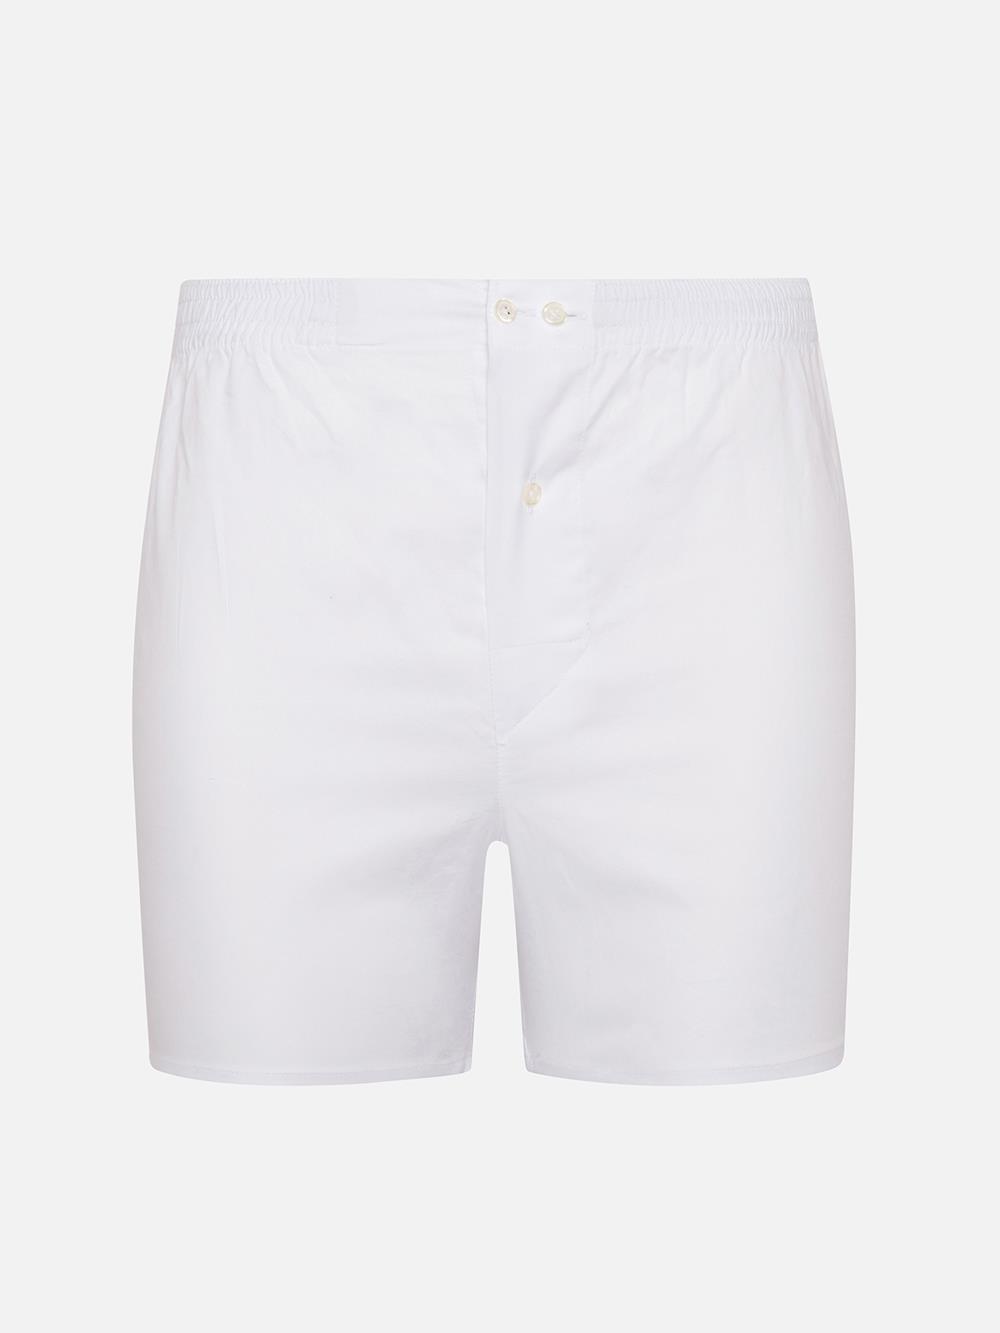 White oxford boxer shorts